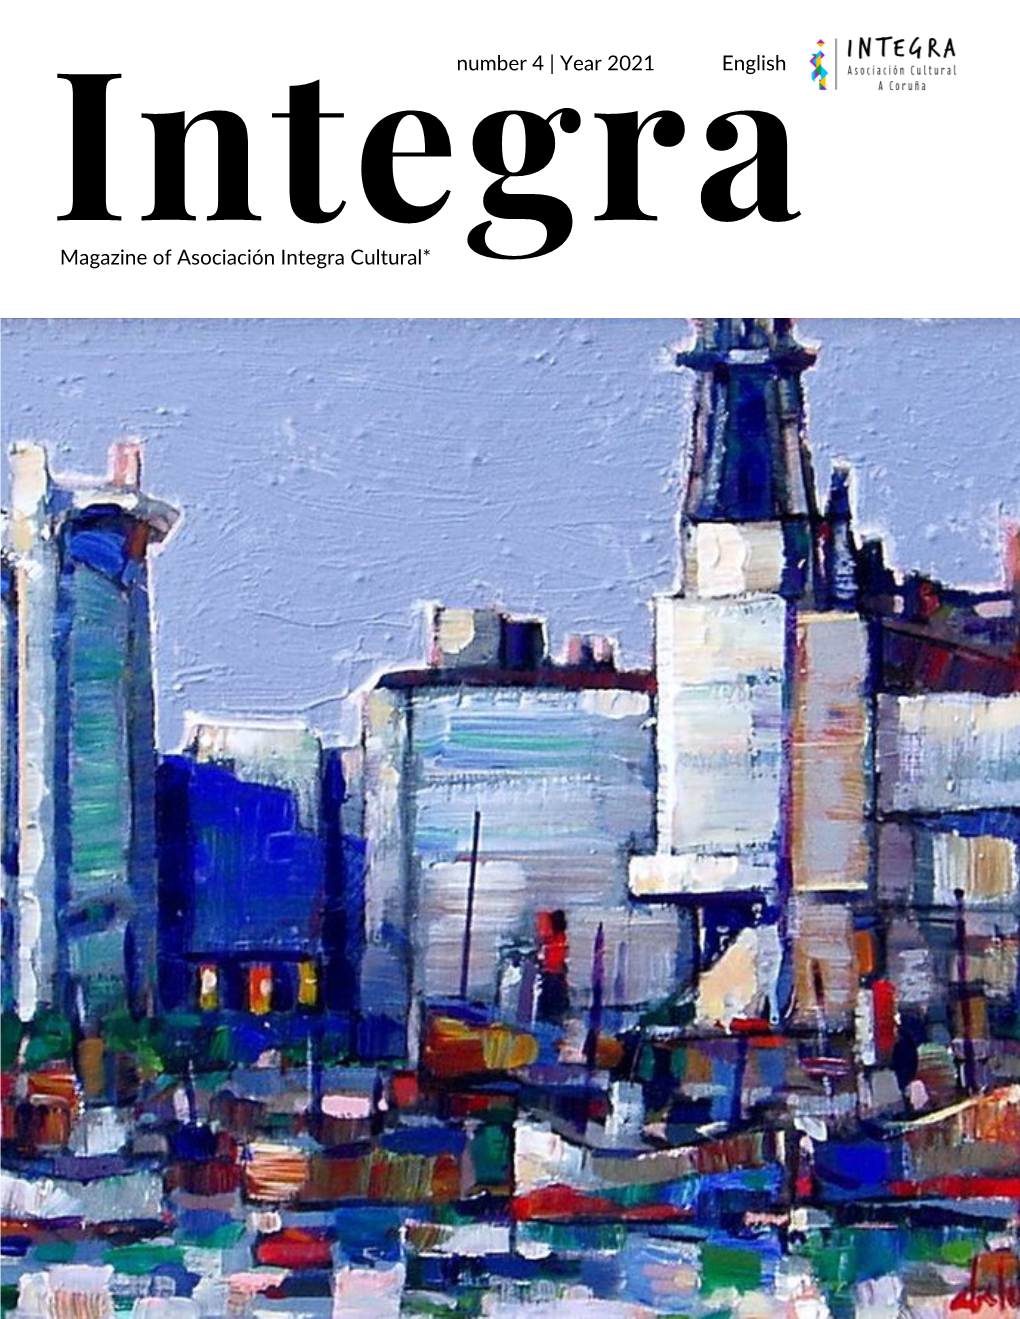 Year 2021 English Magazine of Asociación Integra